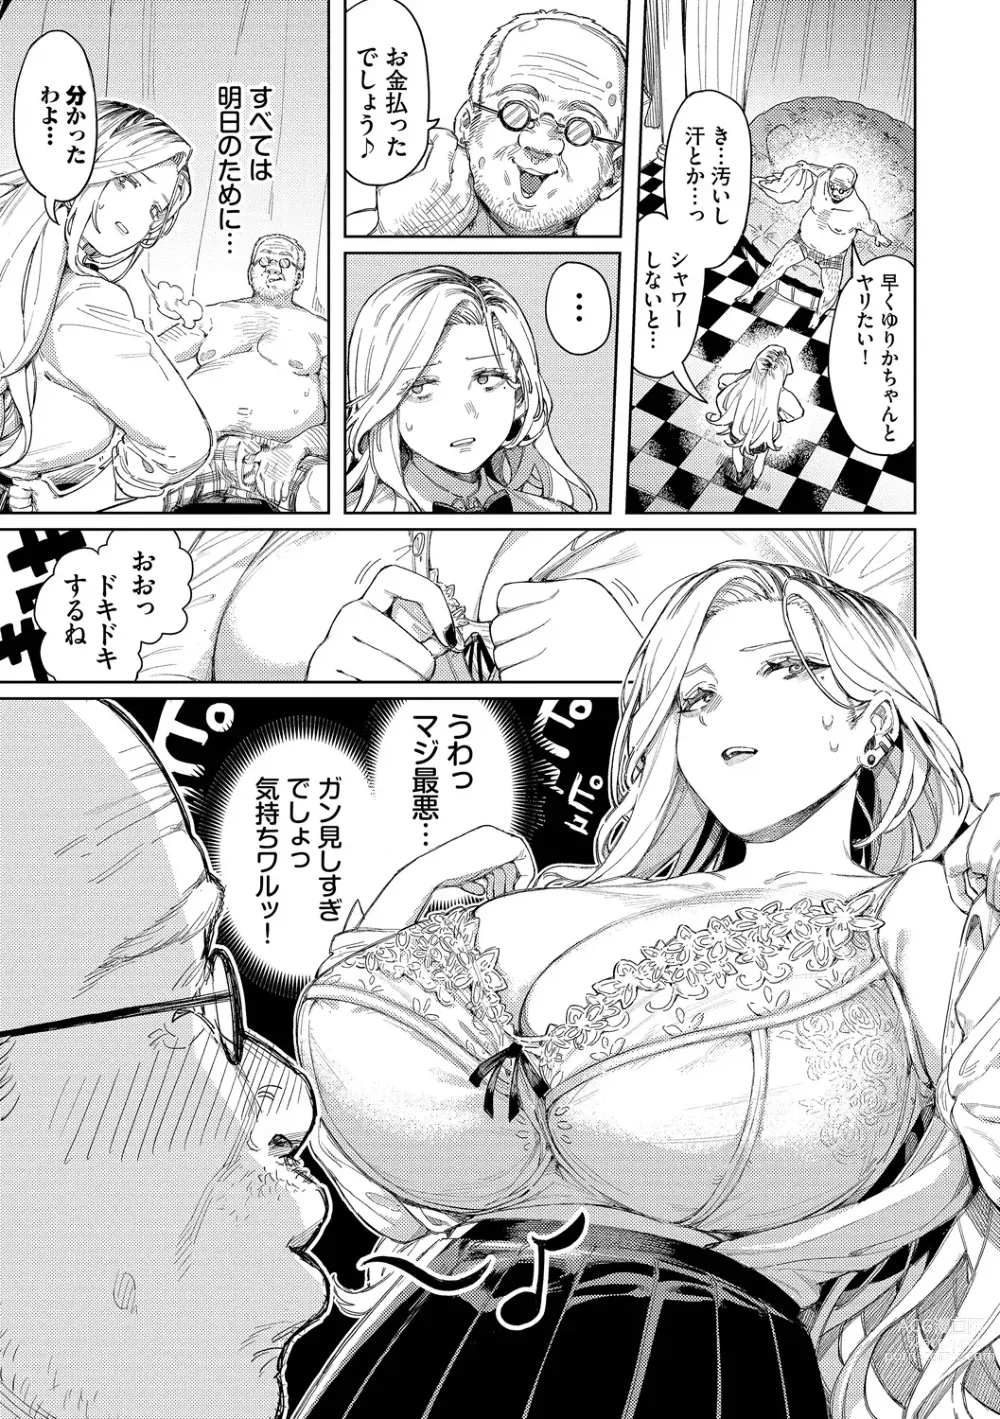 Page 9 of manga Mesuochi Showtime